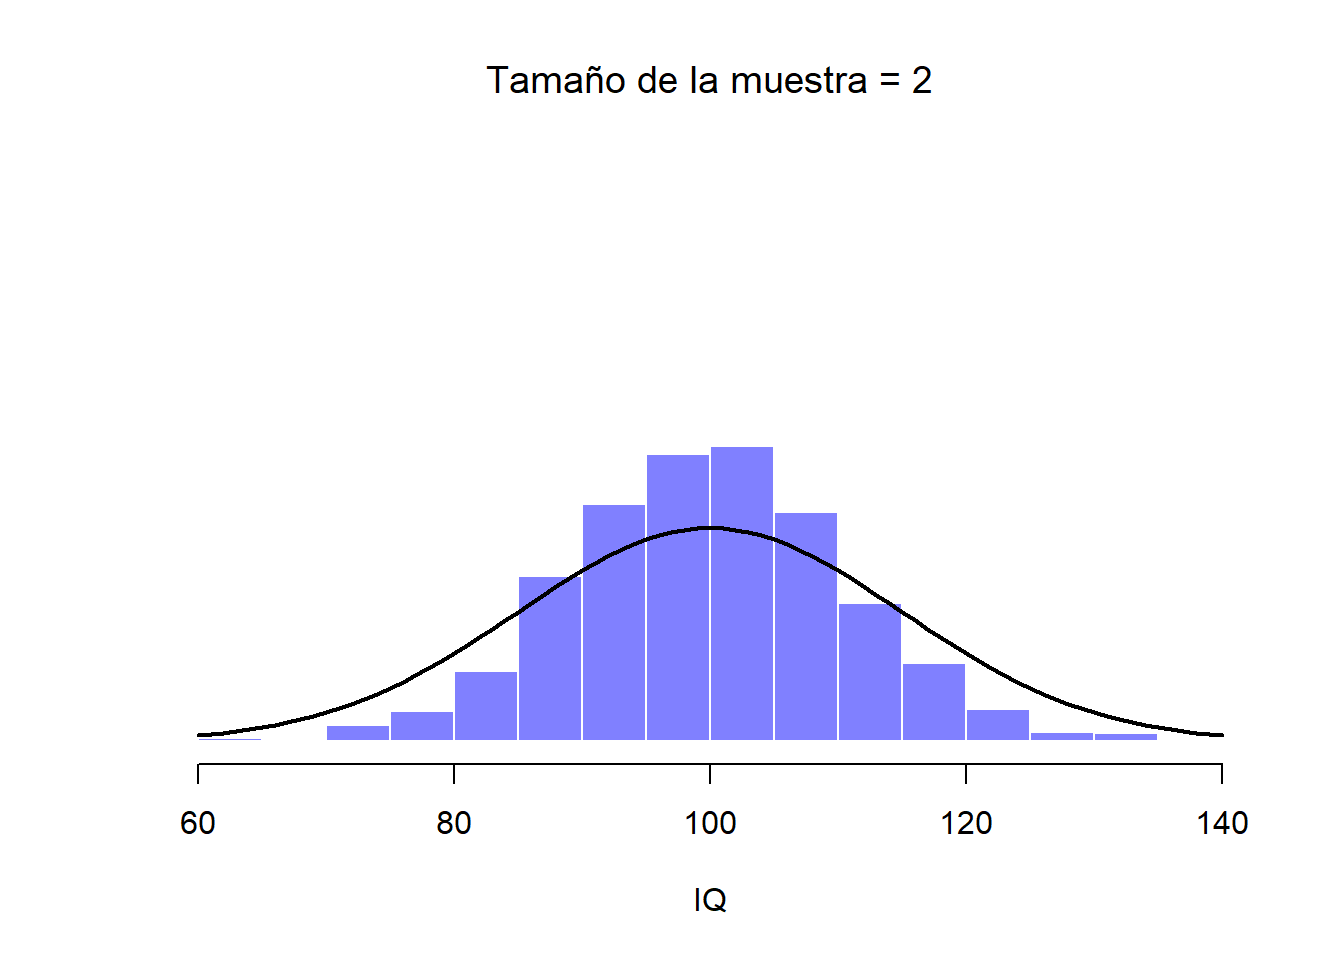 Cuando aumentamos el tamaño de la muestra a 2, la media de cualquier muestra tiende a acercarse más a la media poblacional que a un puntaje individual de CI, por lo que el histograma (distribución muestral) es un poco más estrecho que el de la distribución de la población.